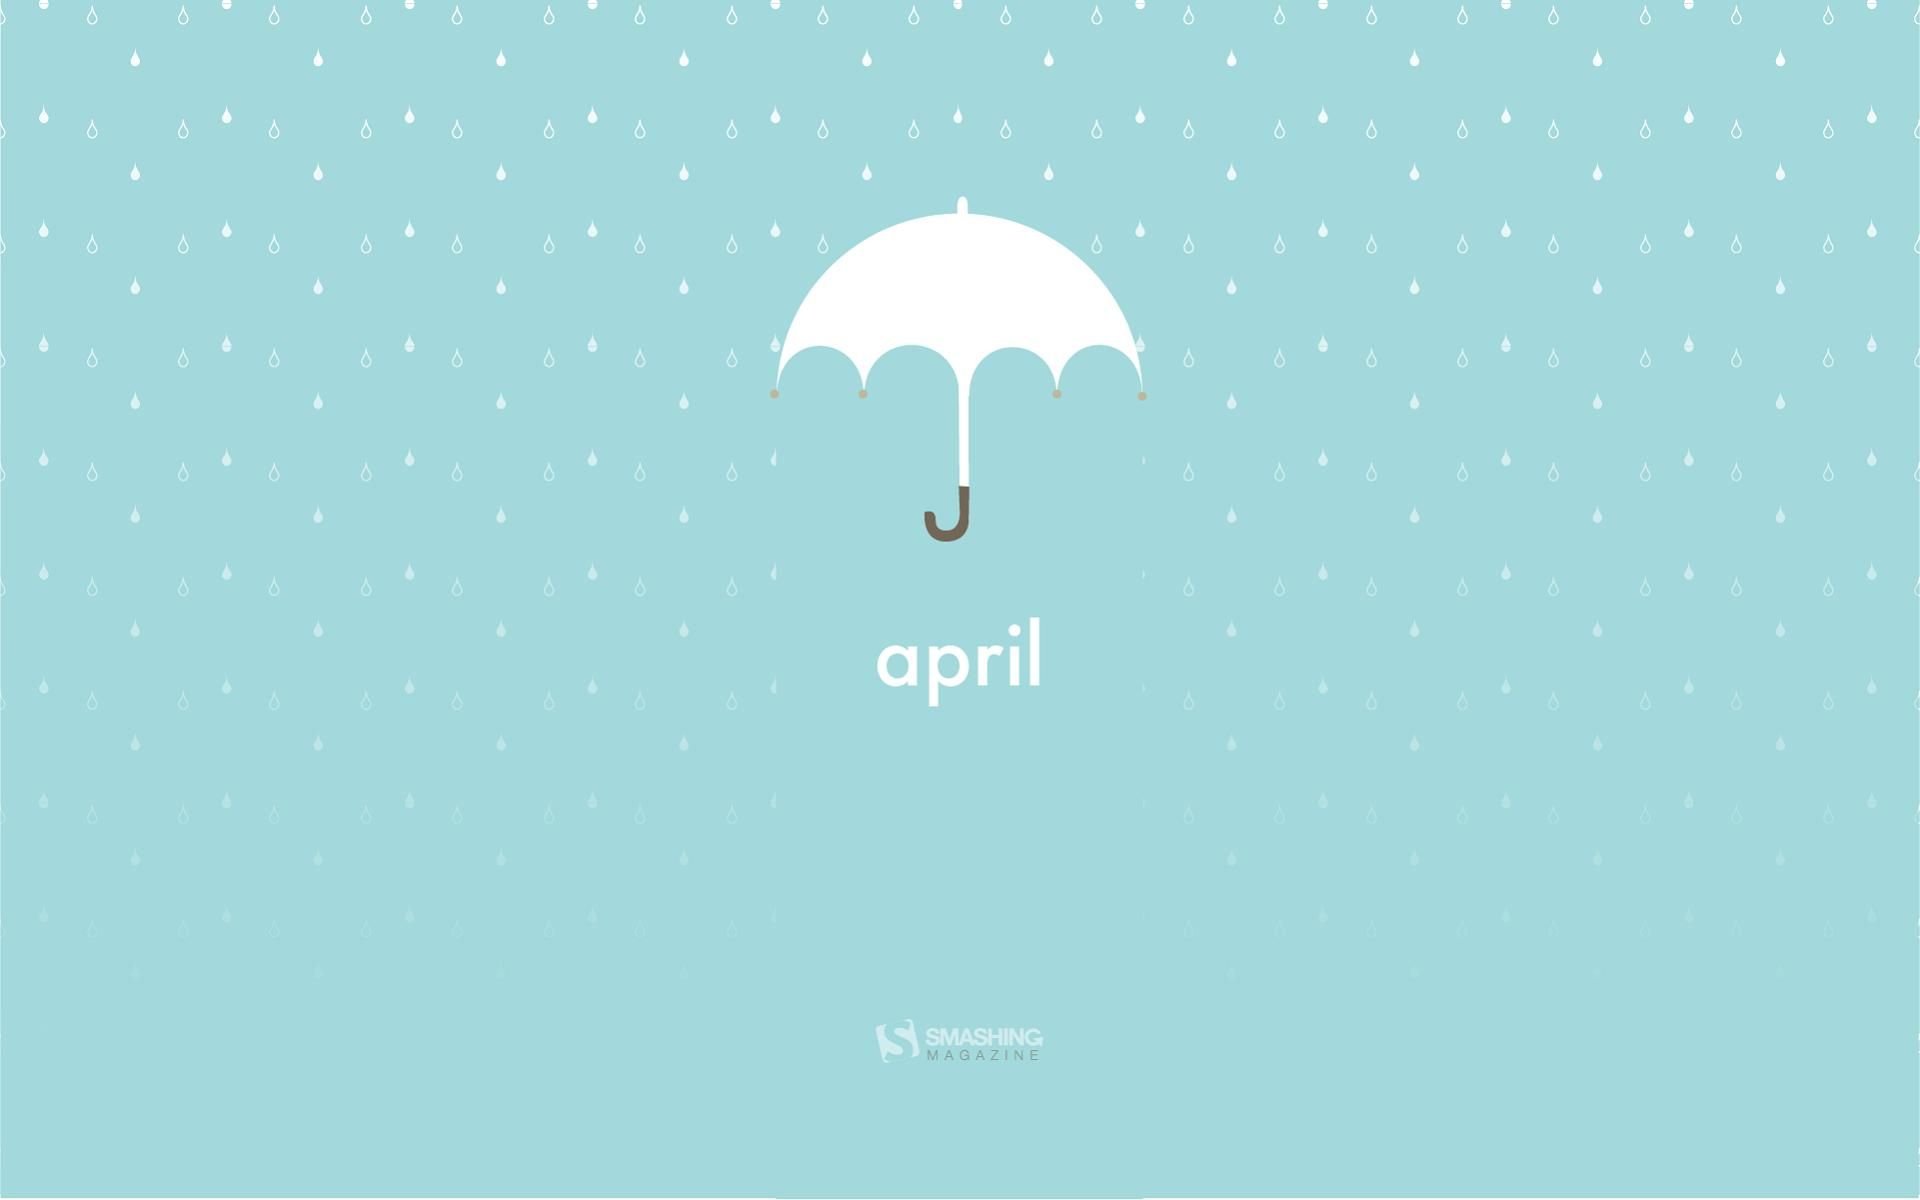 عکس لوگو چتر برگرفته از ماه April با تم رنگی آبی سفید